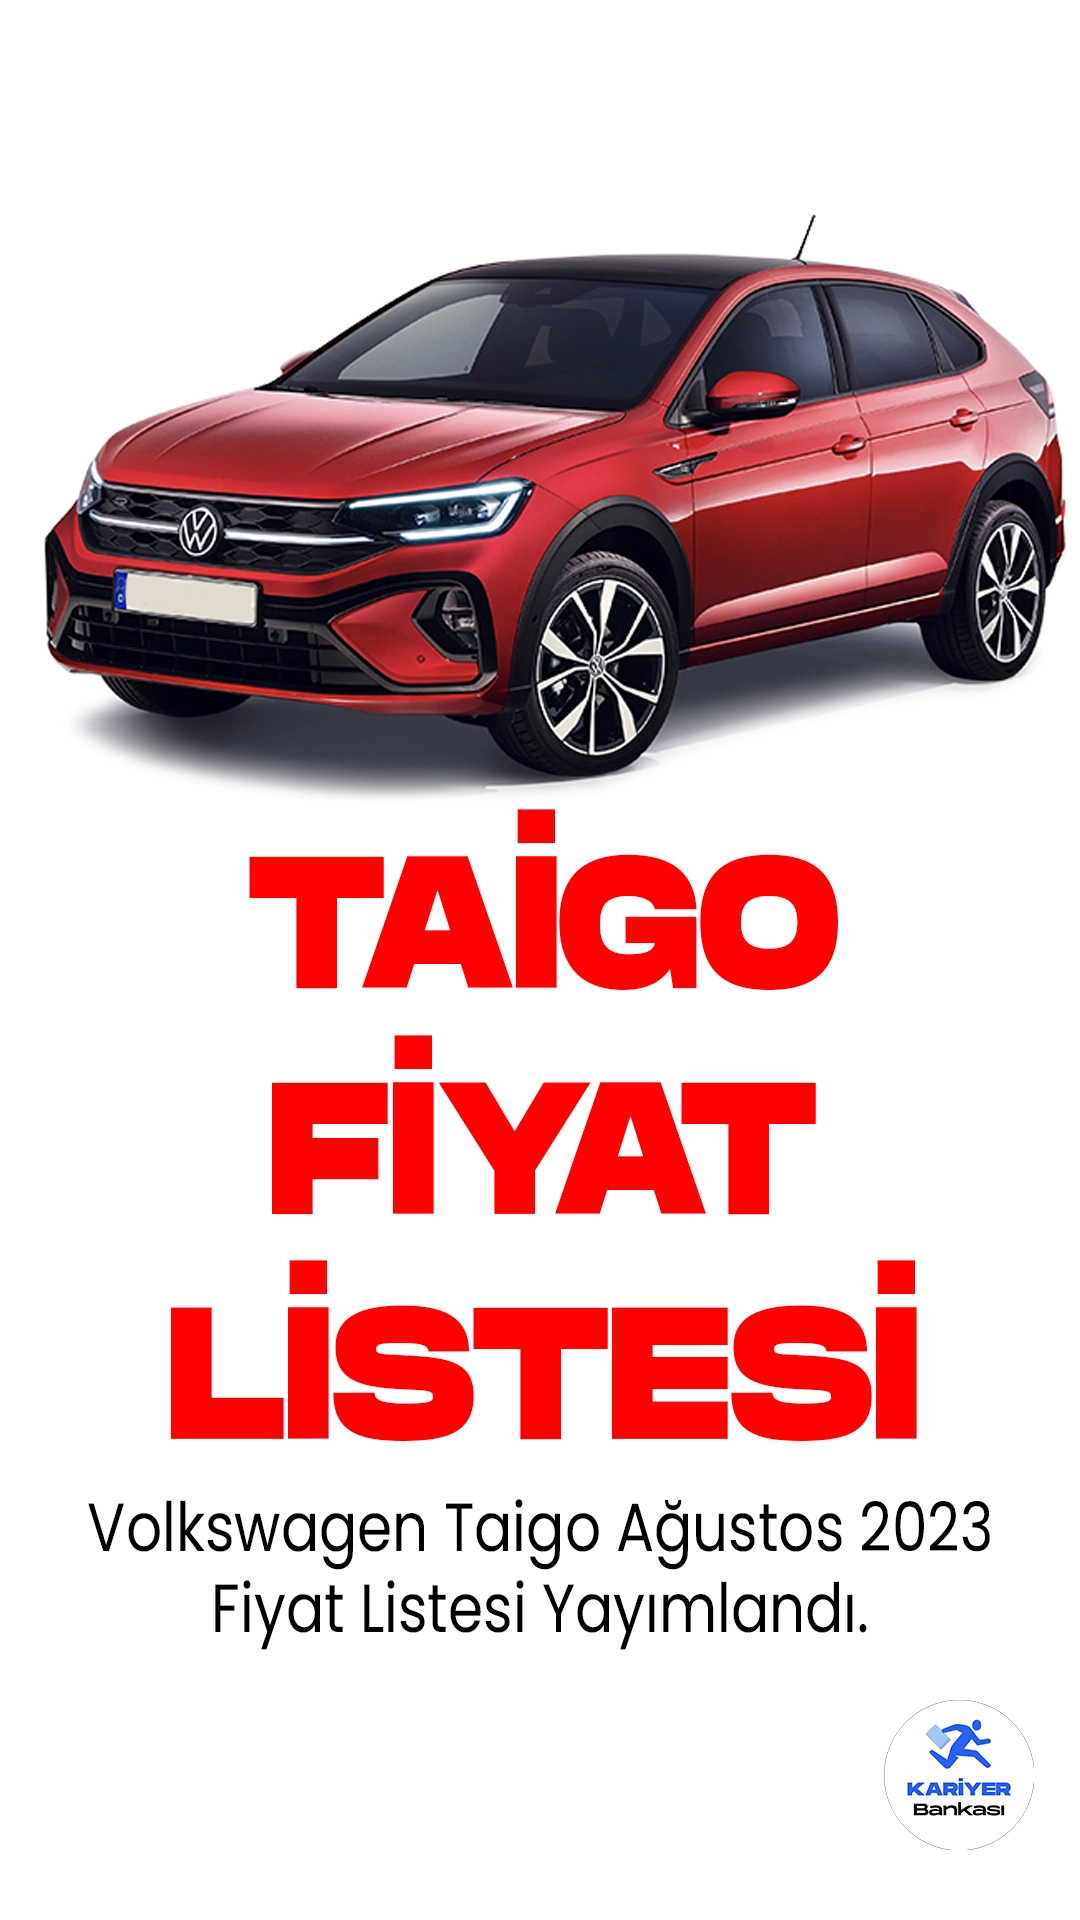 Volkswagen Taigo Ağustos Fiyat Listesi Yayımlandı. Volkswagen Taigo, kompakt SUV segmentindeki yerini alarak tüketicilere zarif tasarımı ve üstün performansı bir arada sunuyor.